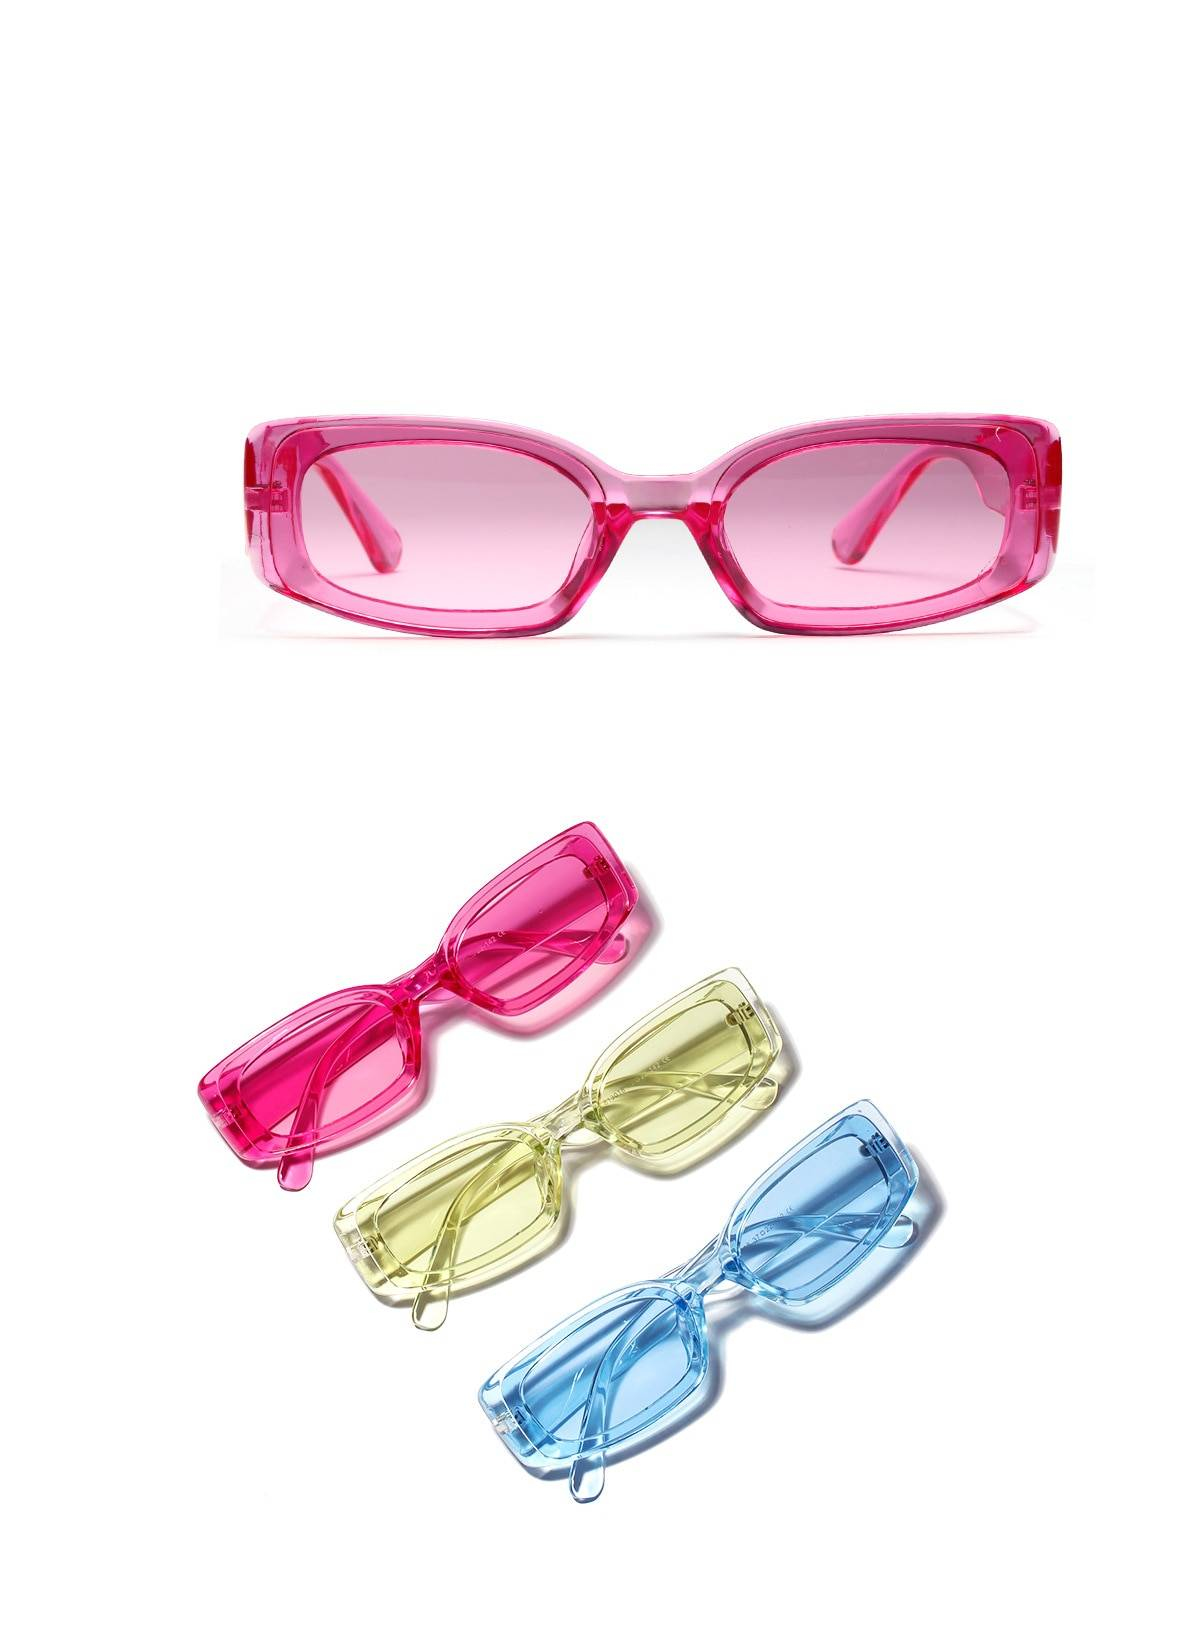 Nouvelle mode Vintage lunettes de soleil femmes marque concepteur rétro lunettes de soleil Rectangle lunettes de soleil femme UV400 lentille lunettes